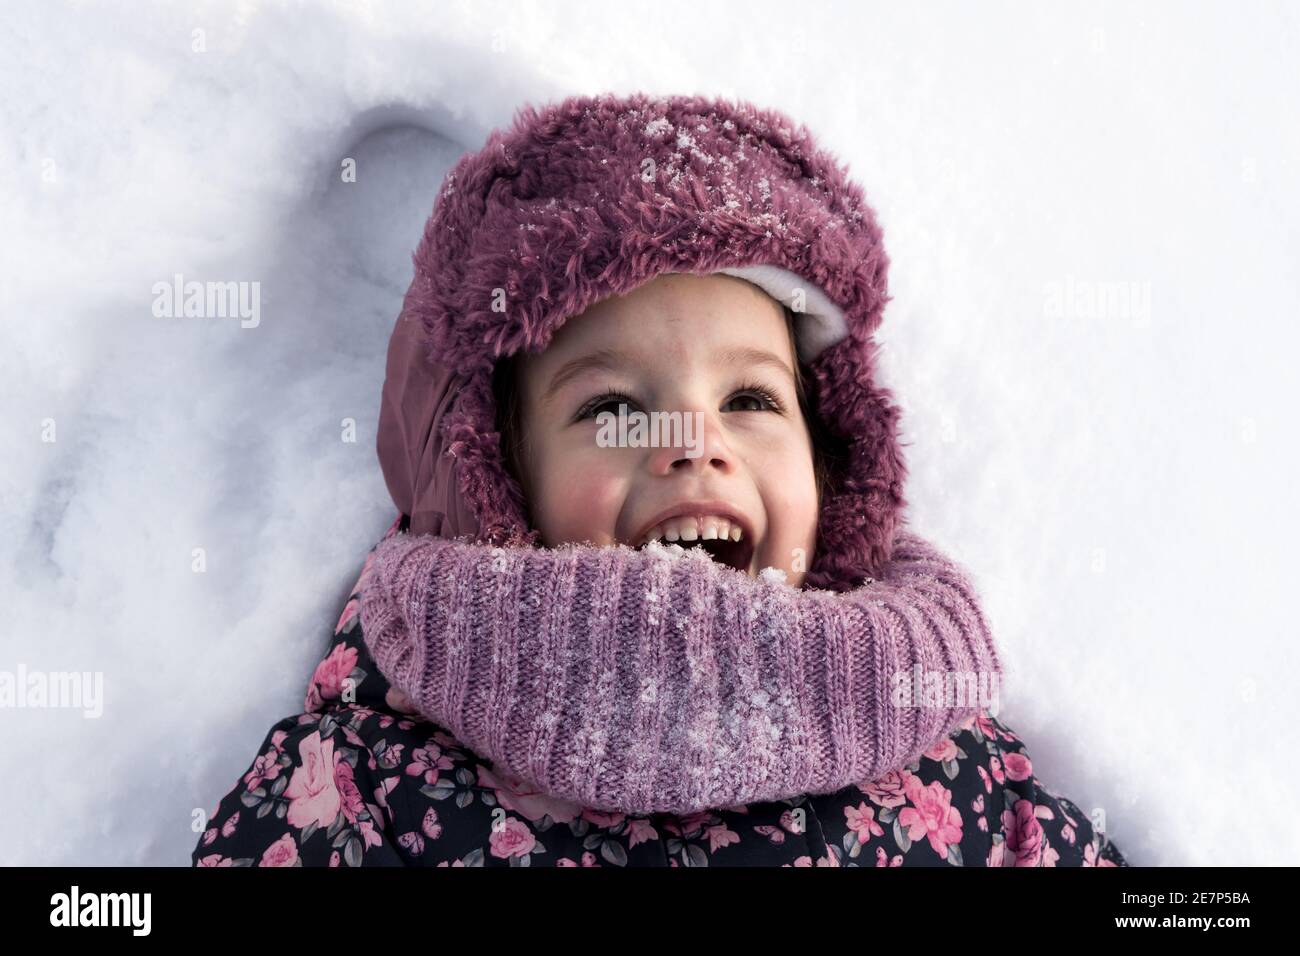 Winter, Familie, Kindheit Konzepte - close-up Portrait authentische kleine Vorschulmädchen in rosa Kleidung Lächeln lachen schreien mit offenem Mund auflegen Stockfoto